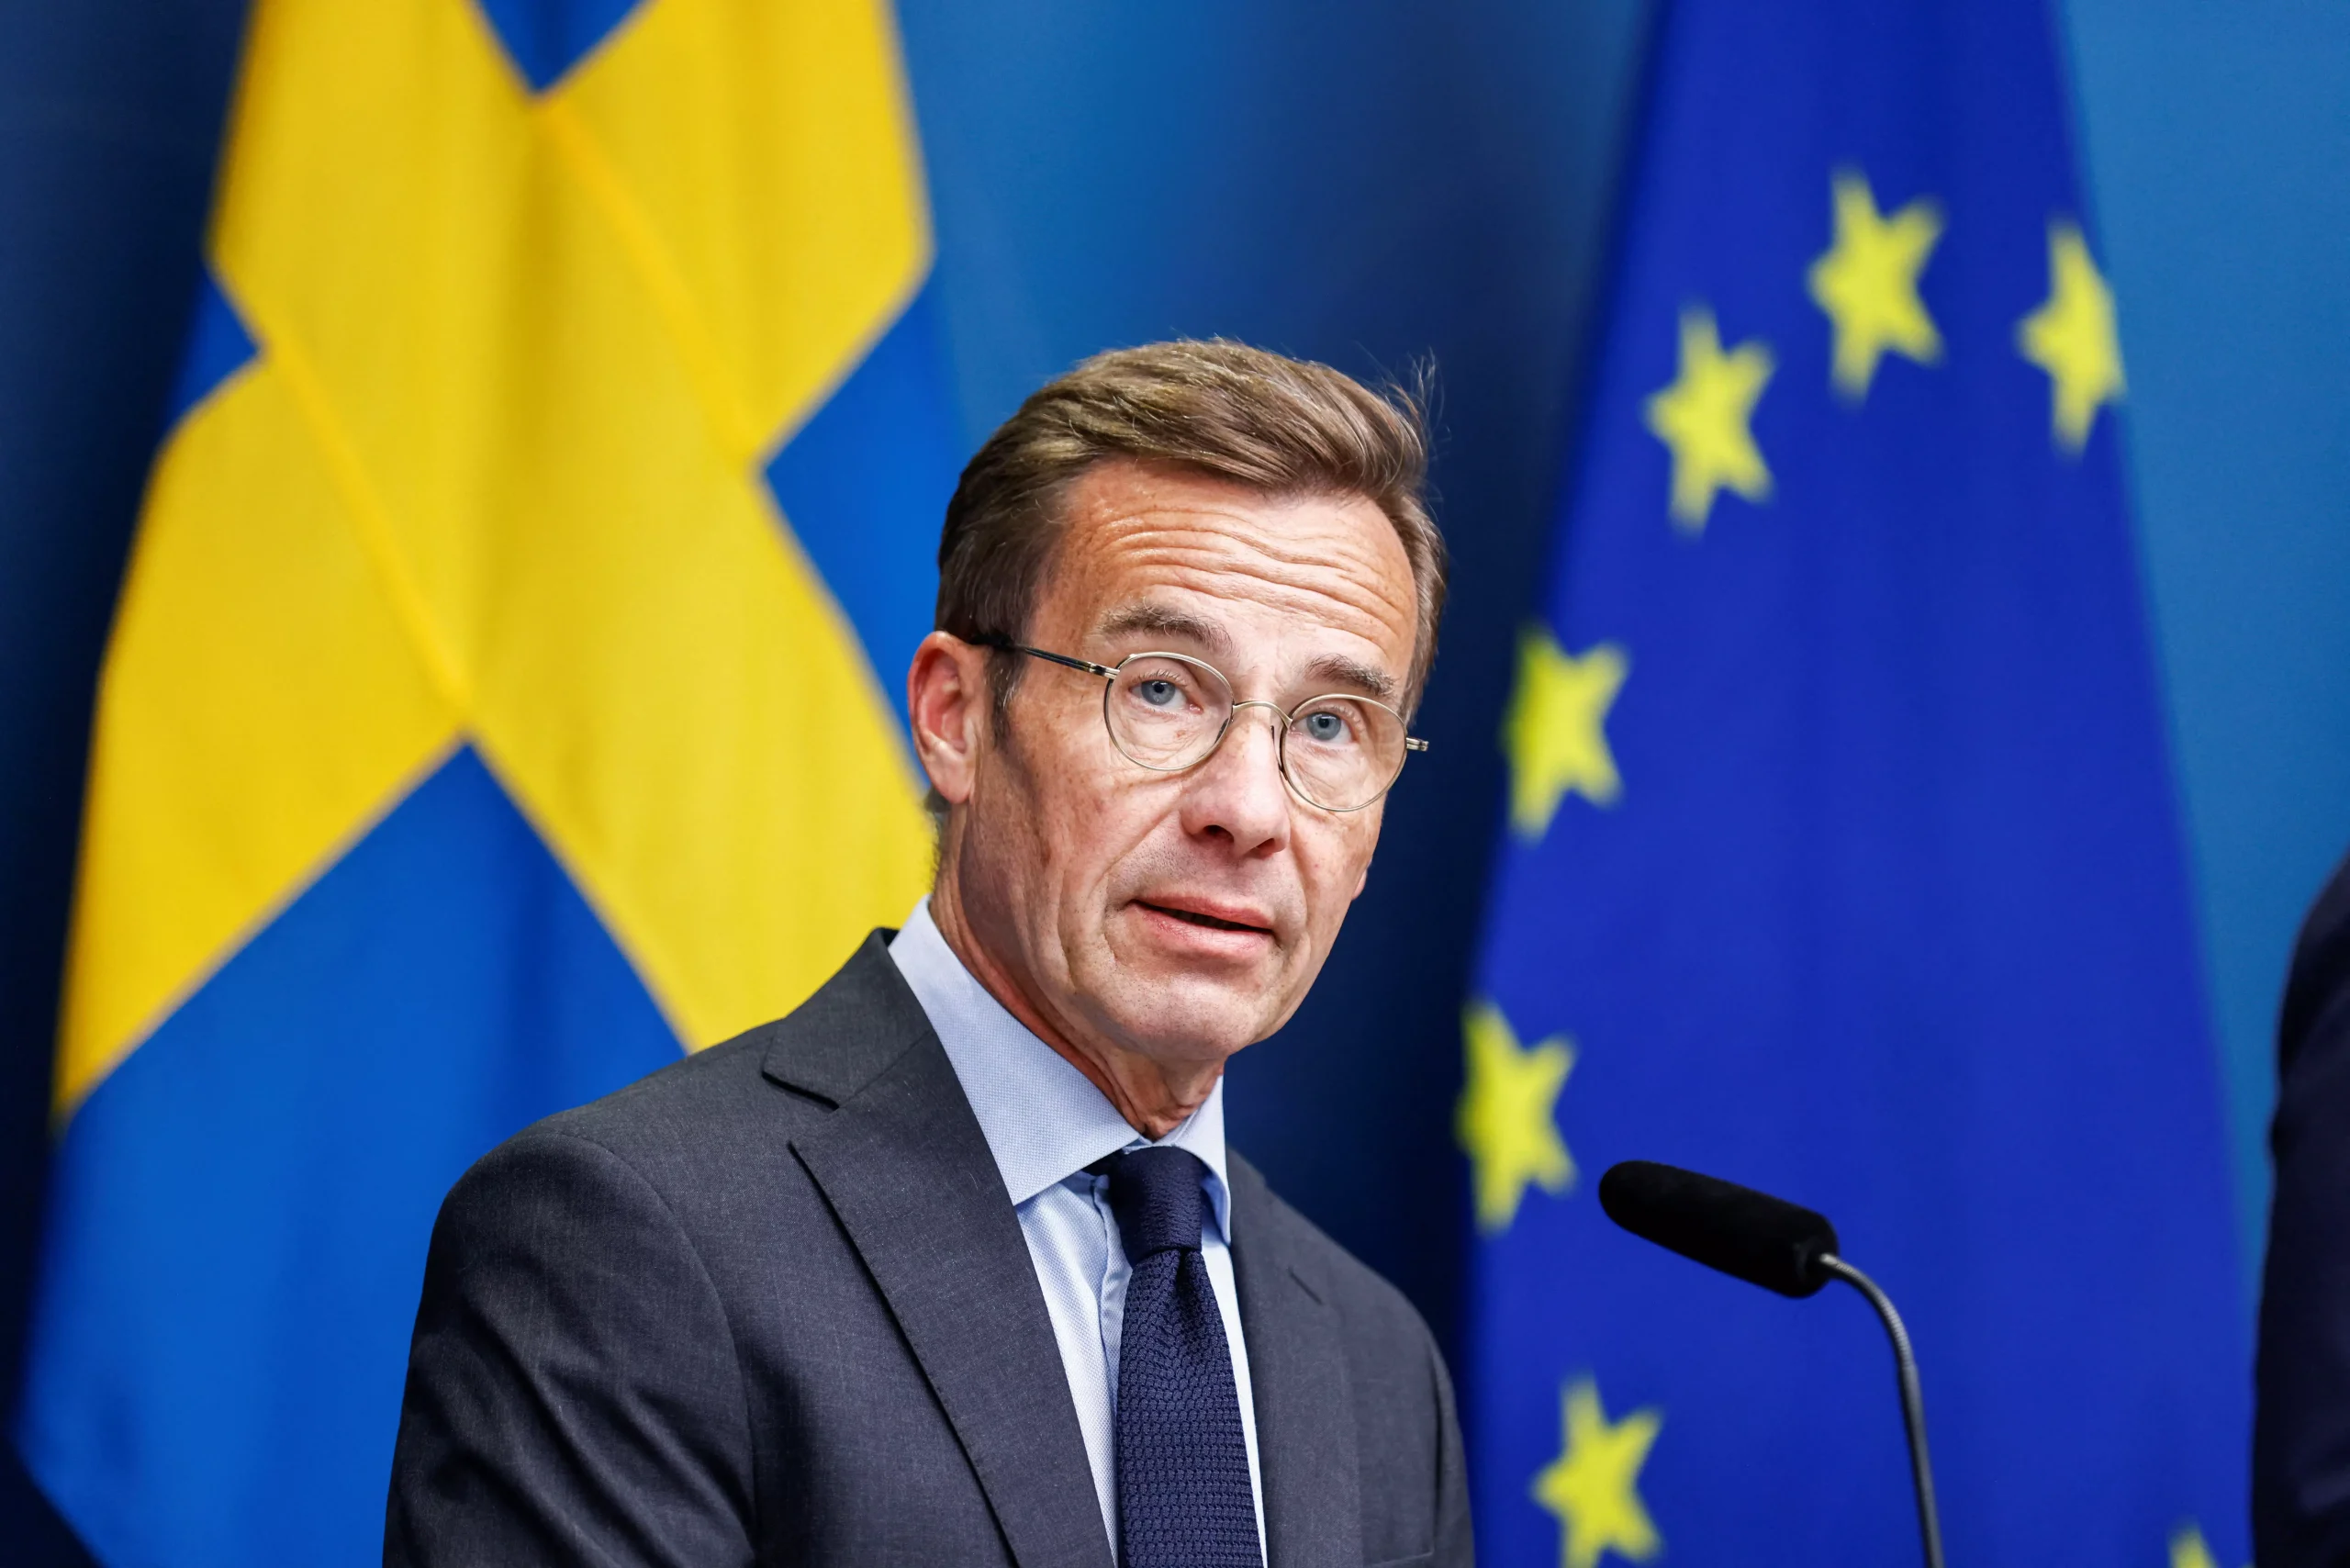 Σουηδός πρωθυπουργός: «Η αποστολή χερσαίων δυνάμεων στην Ουκρανία δεν είναι θέμα συζήτησης προς το παρόν»